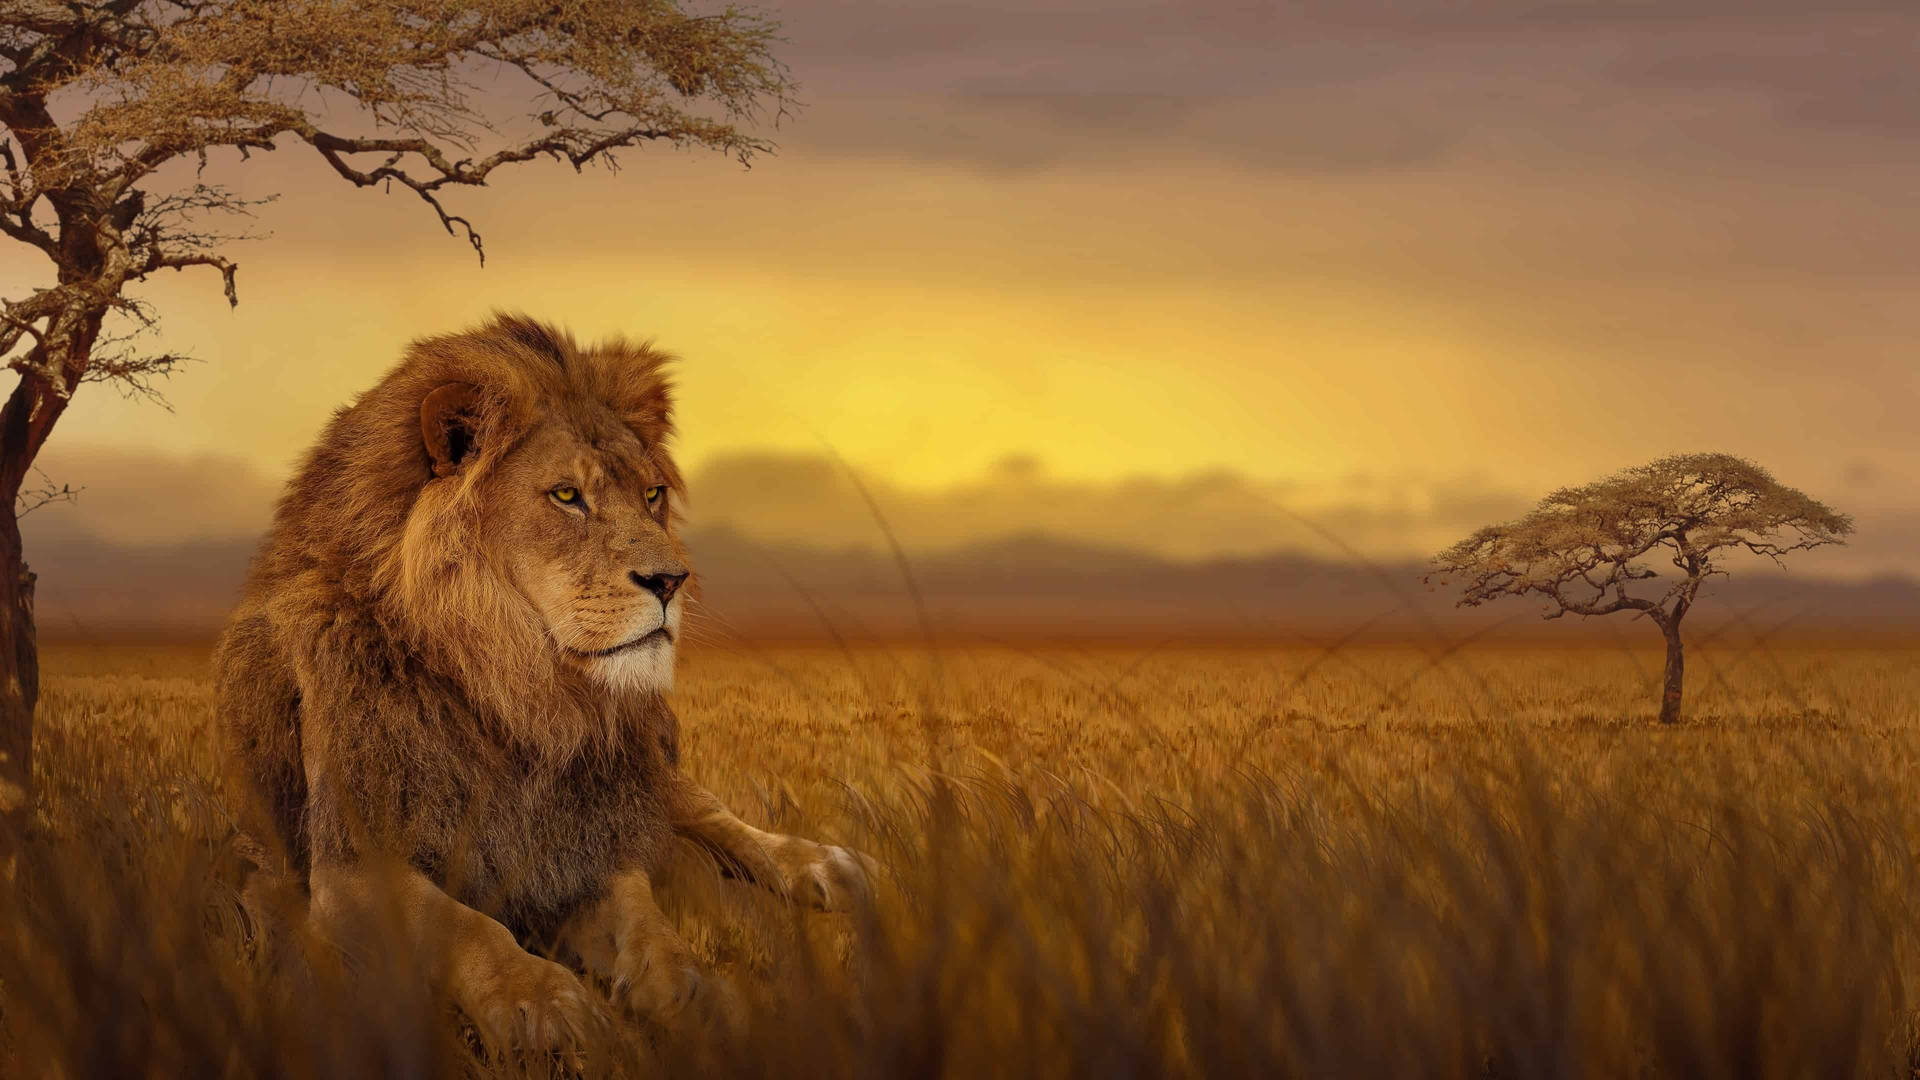 Lion In Grass Field Africa Background